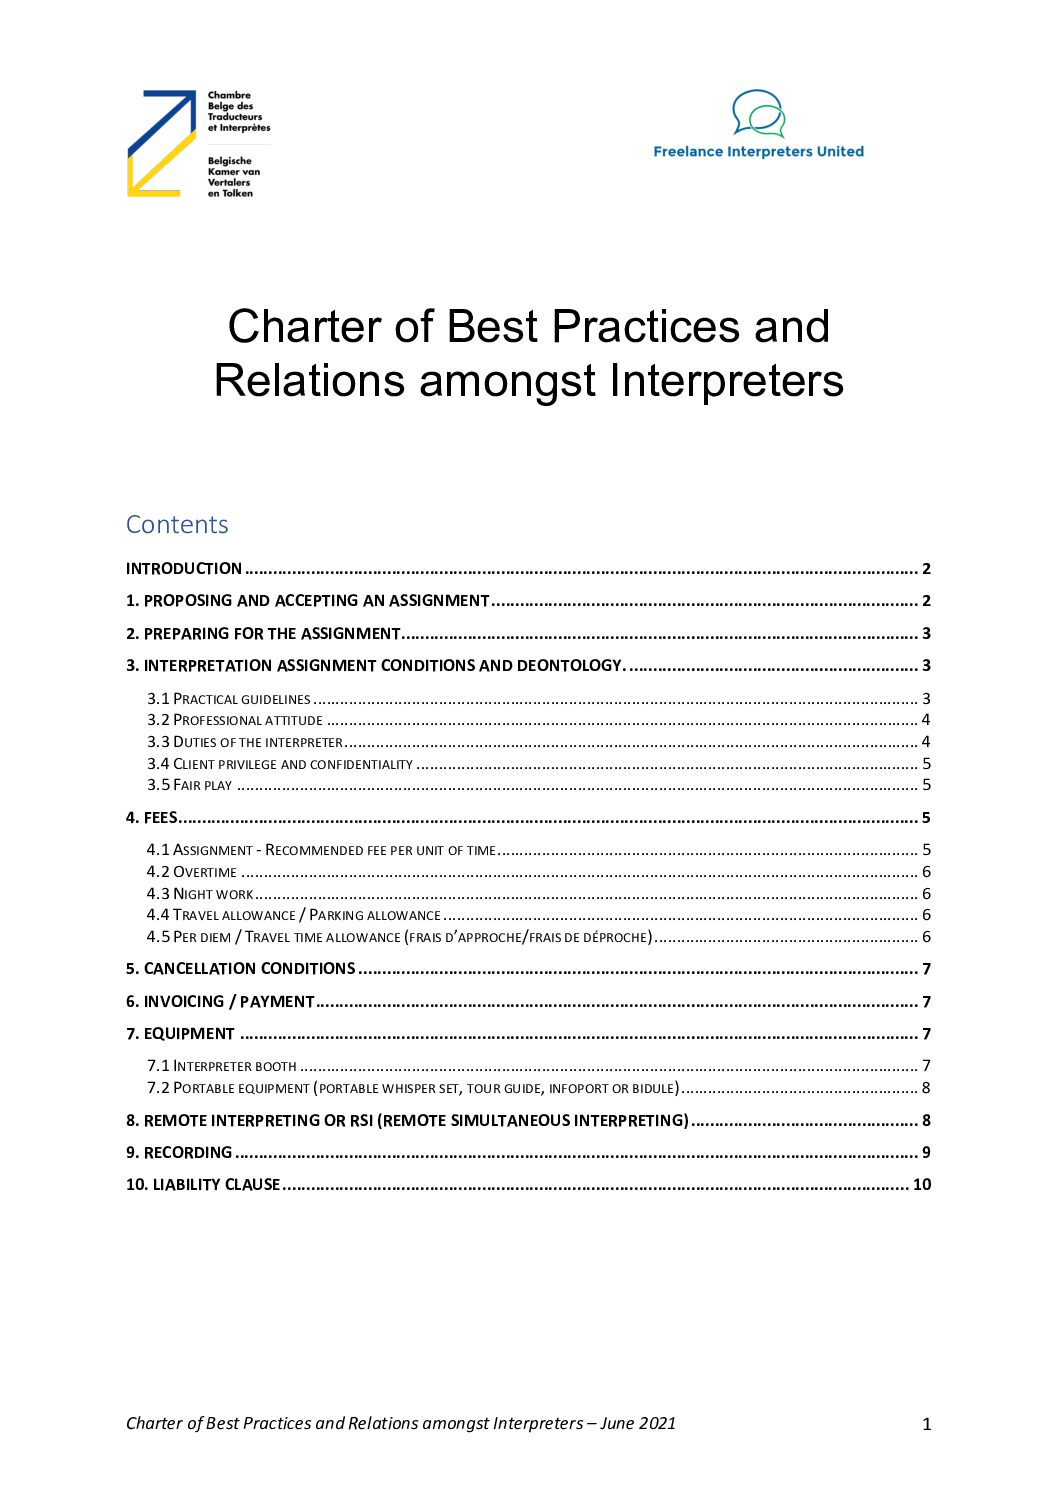 Image de présentation pour le document : Charter of best practices and relations amongst colleagues for interpreters – version 2023